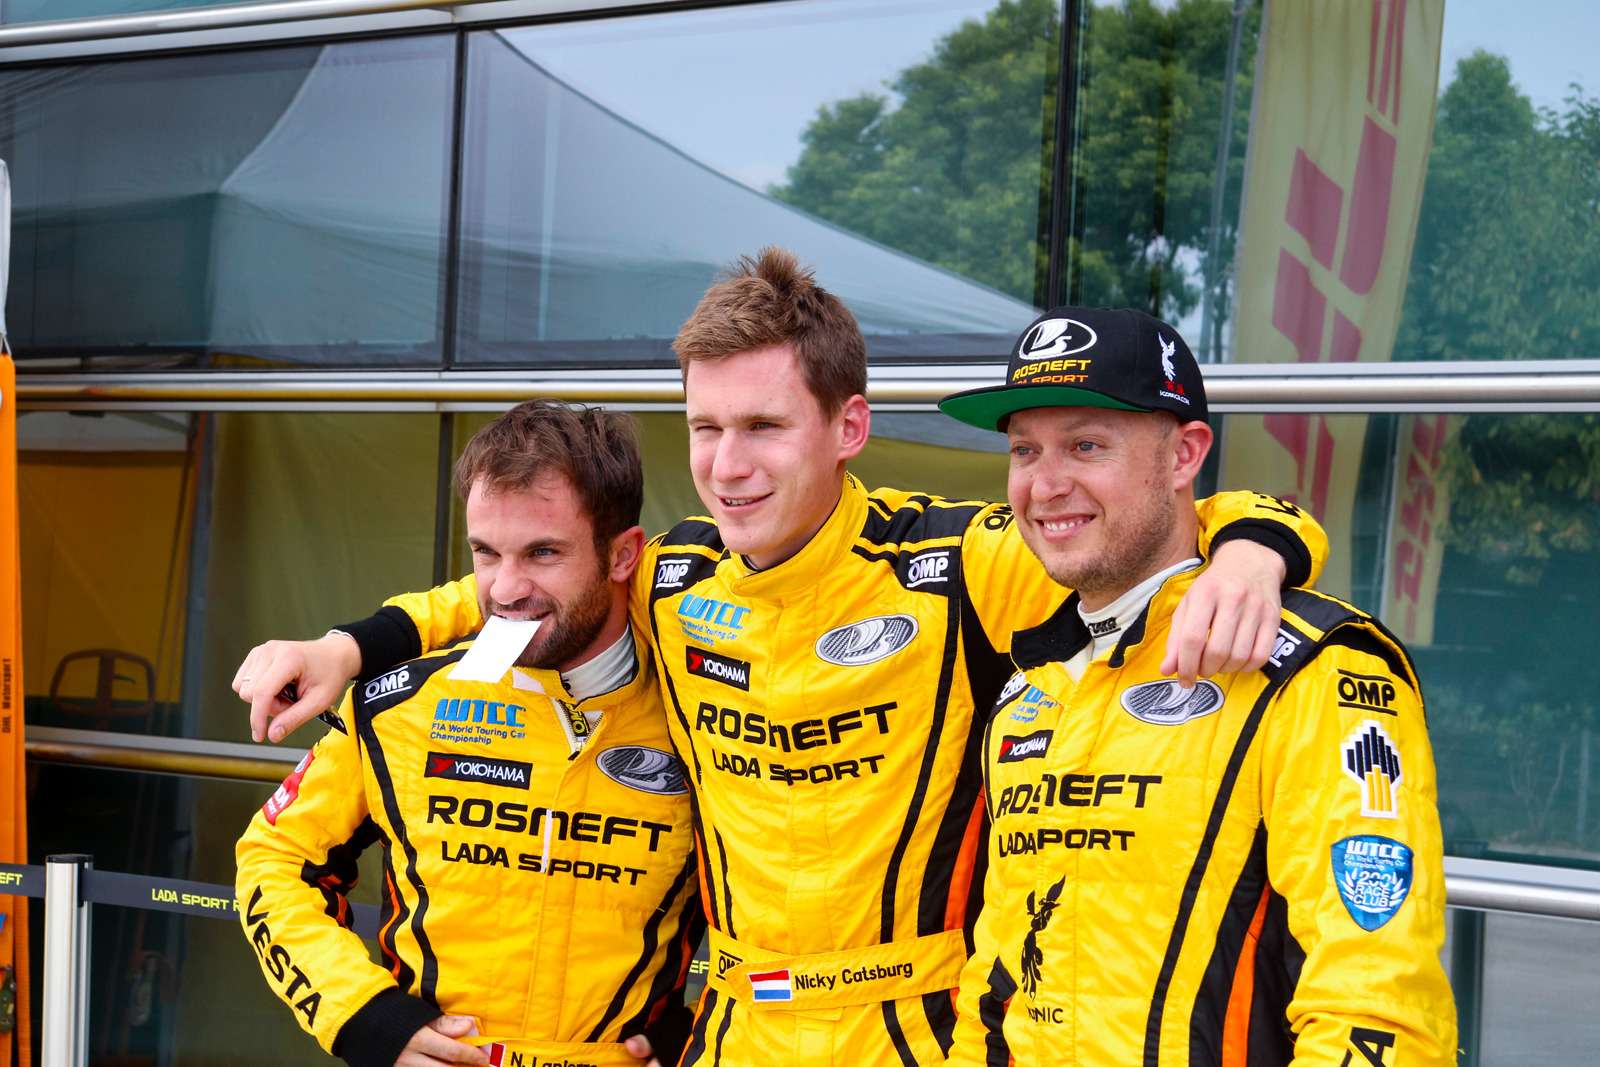 Николя Лапьер, Ники Катсбург, Роб Хафф – в команде «Лада Спорт Роснефть» сезон завершали только титулованные пилоты.